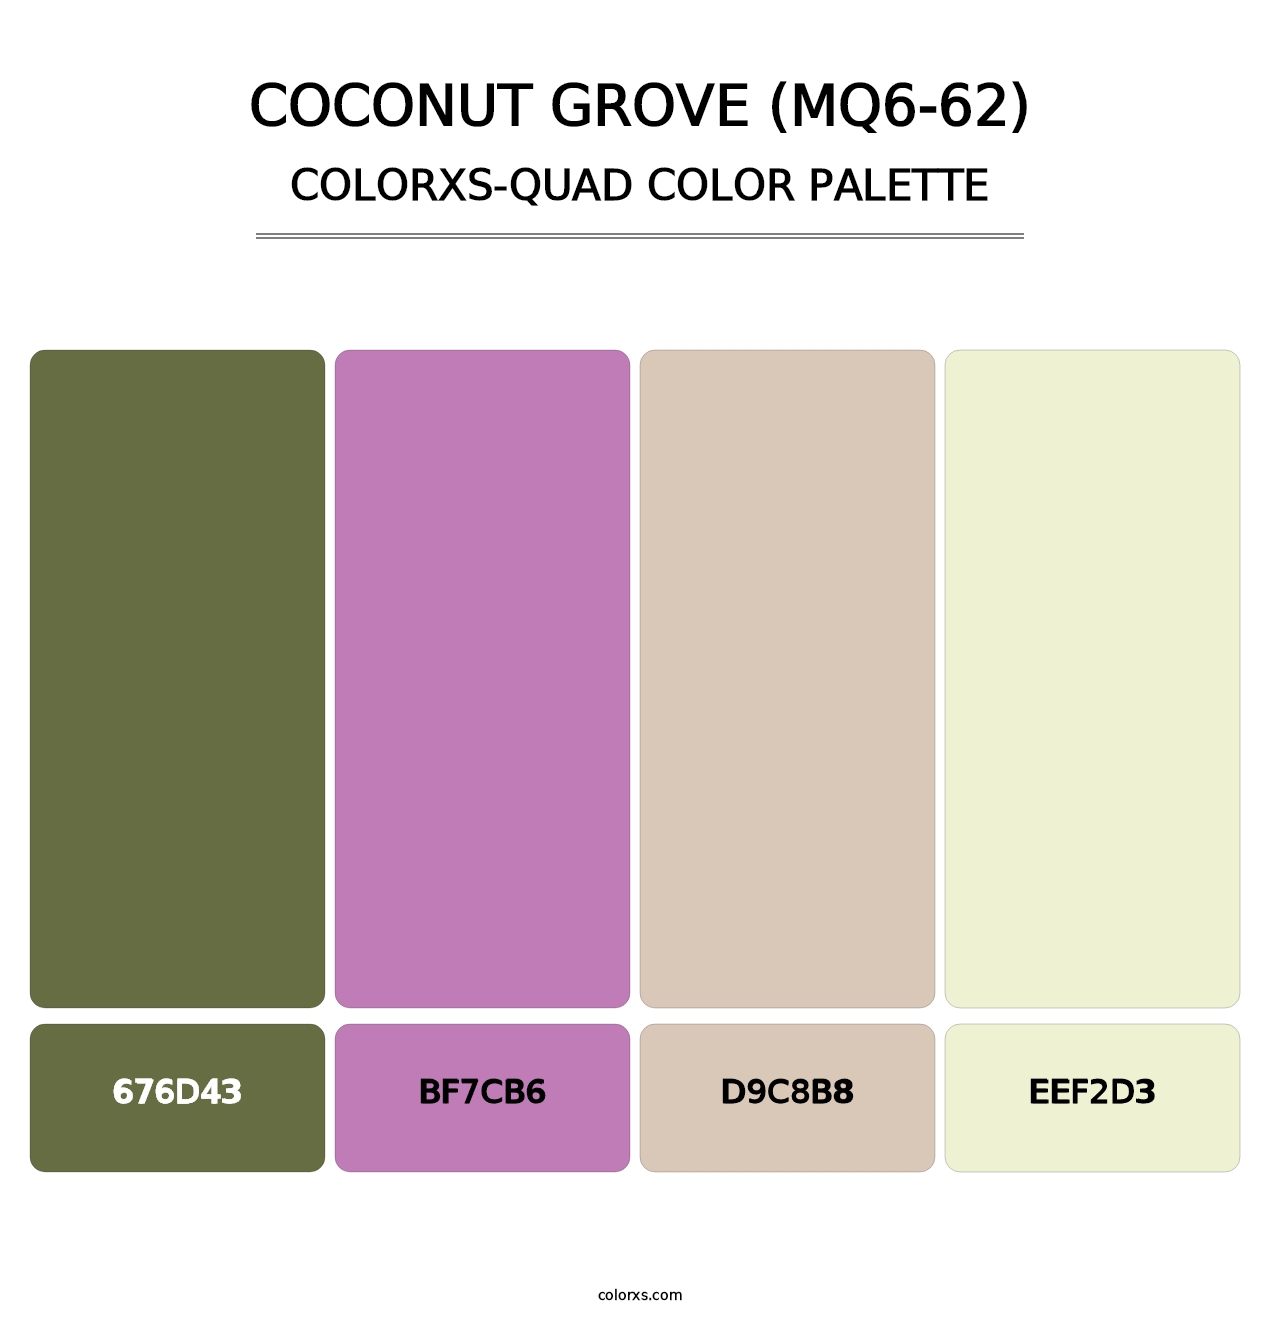 Coconut Grove (MQ6-62) - Colorxs Quad Palette